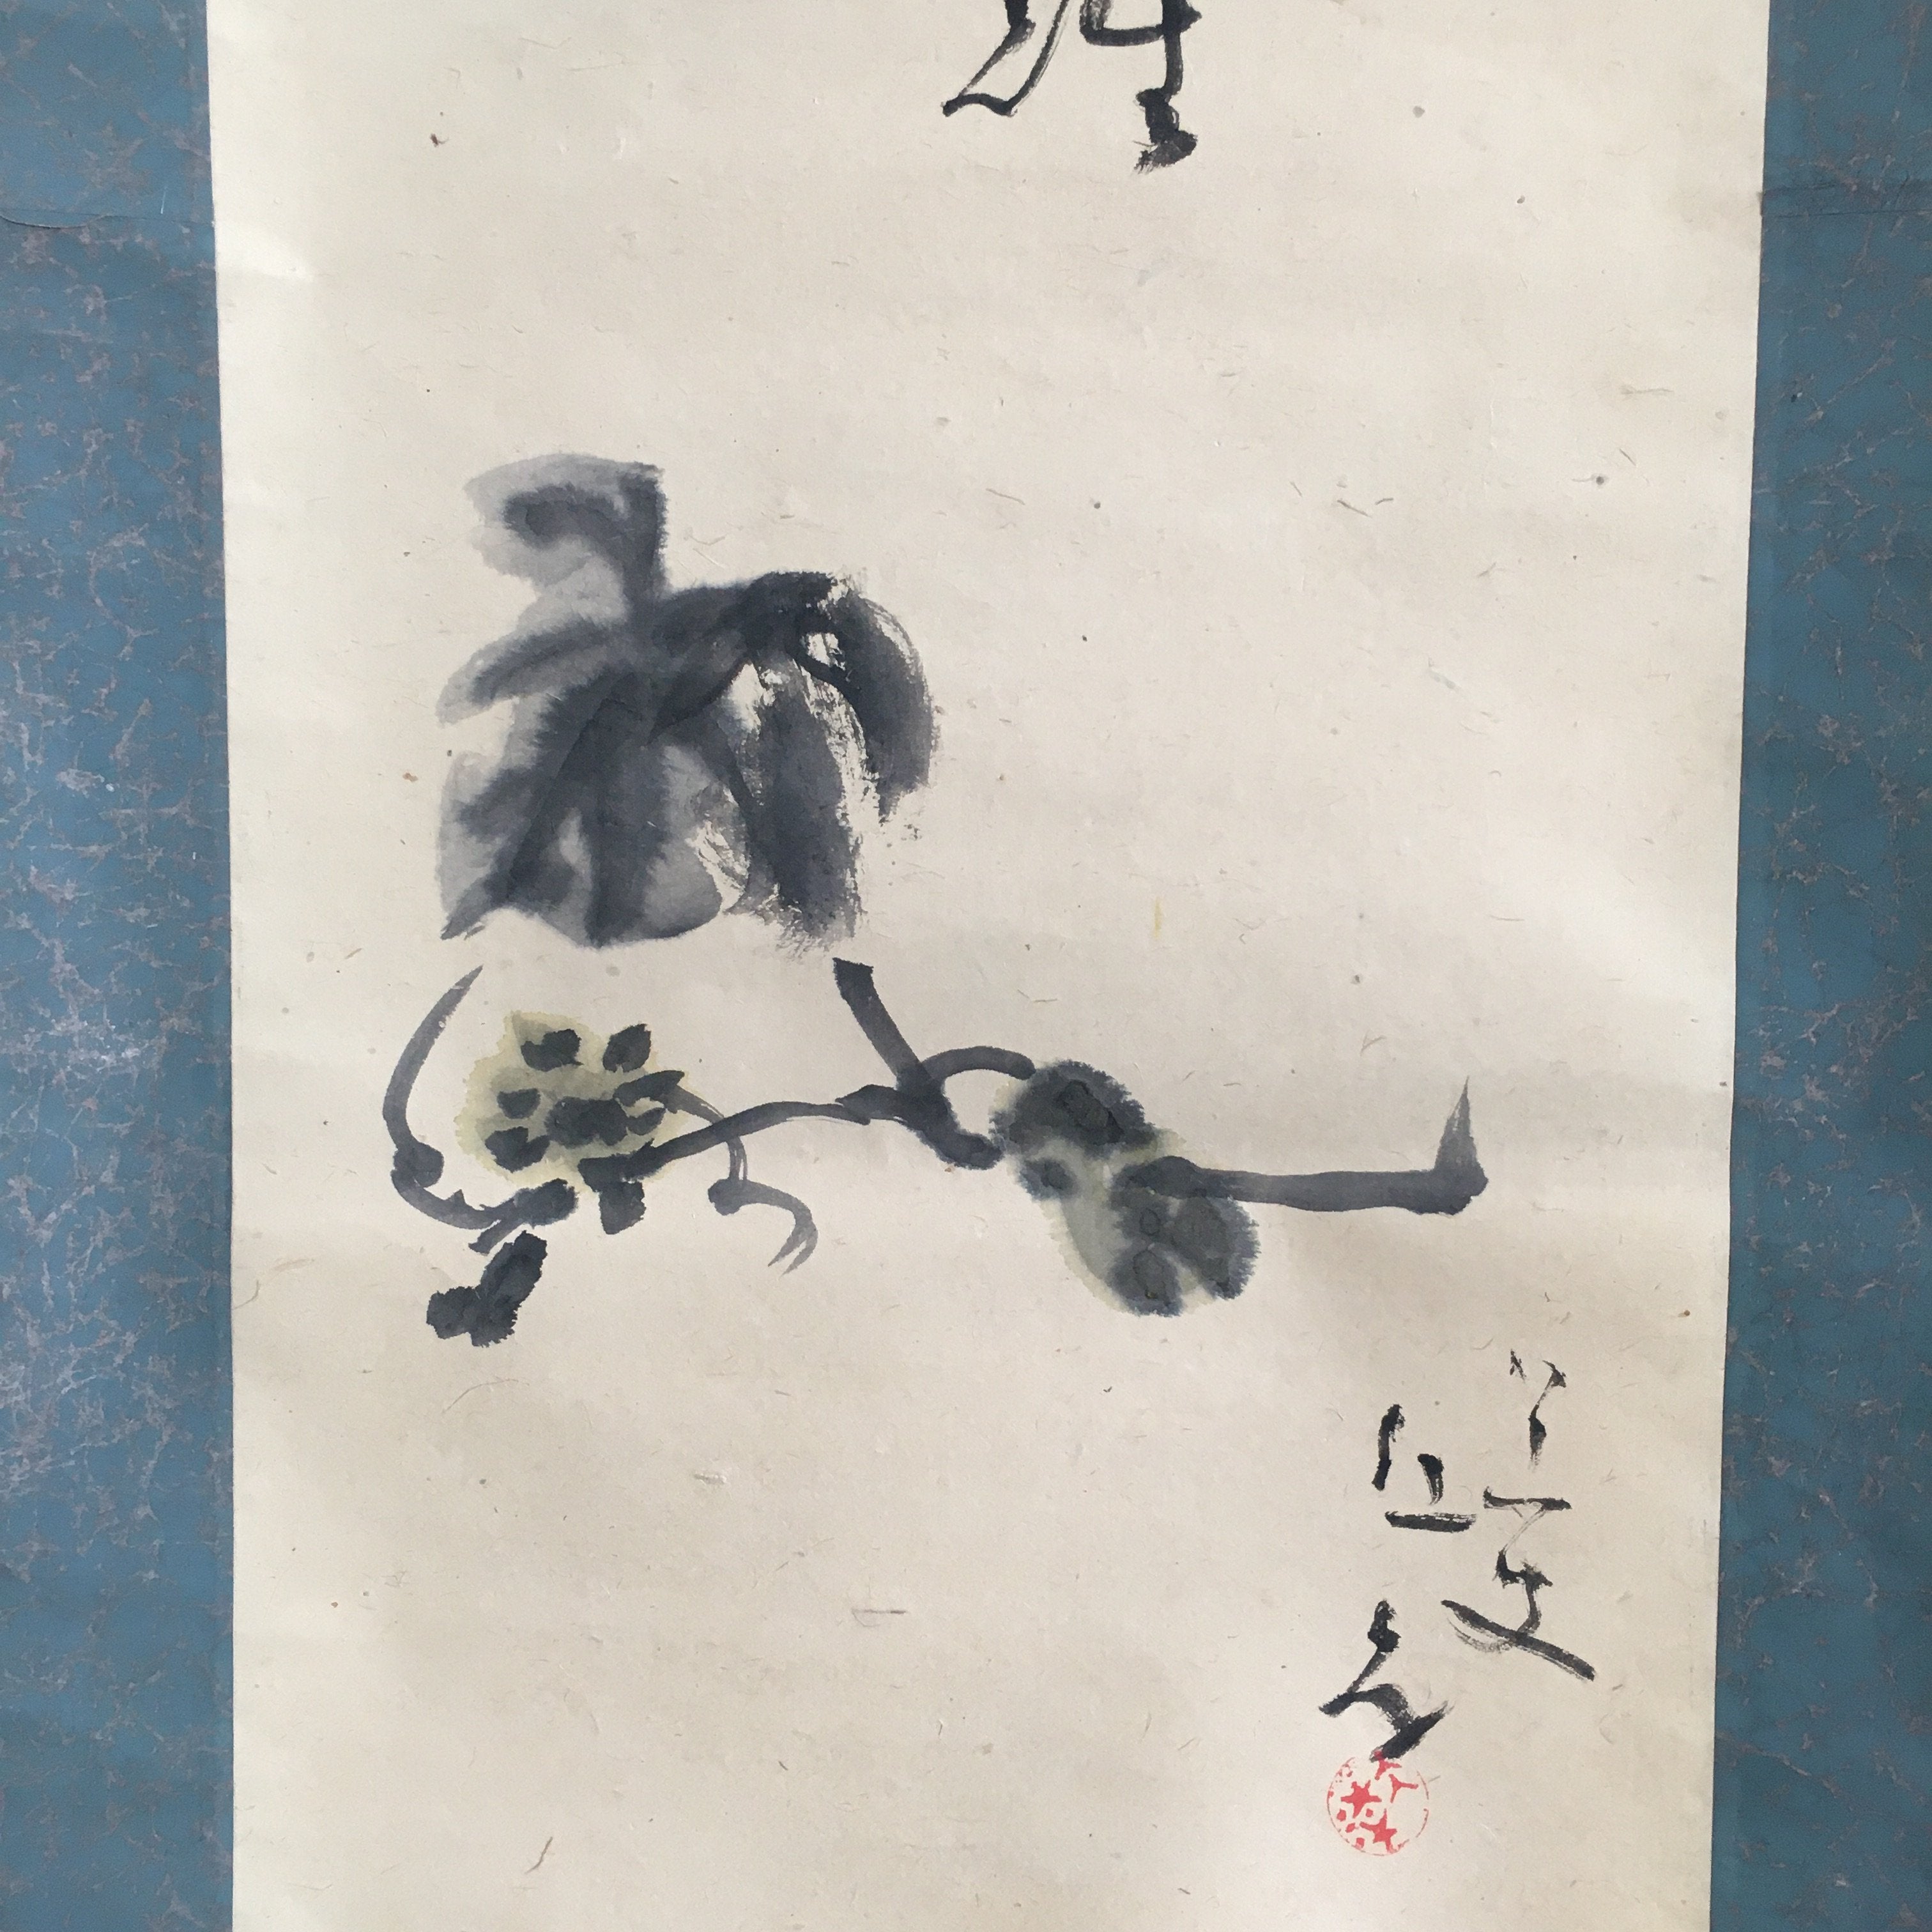 Japanese Hanging Scroll Vtg Kakejiku Kakemono Painting Flowering Plant SC691